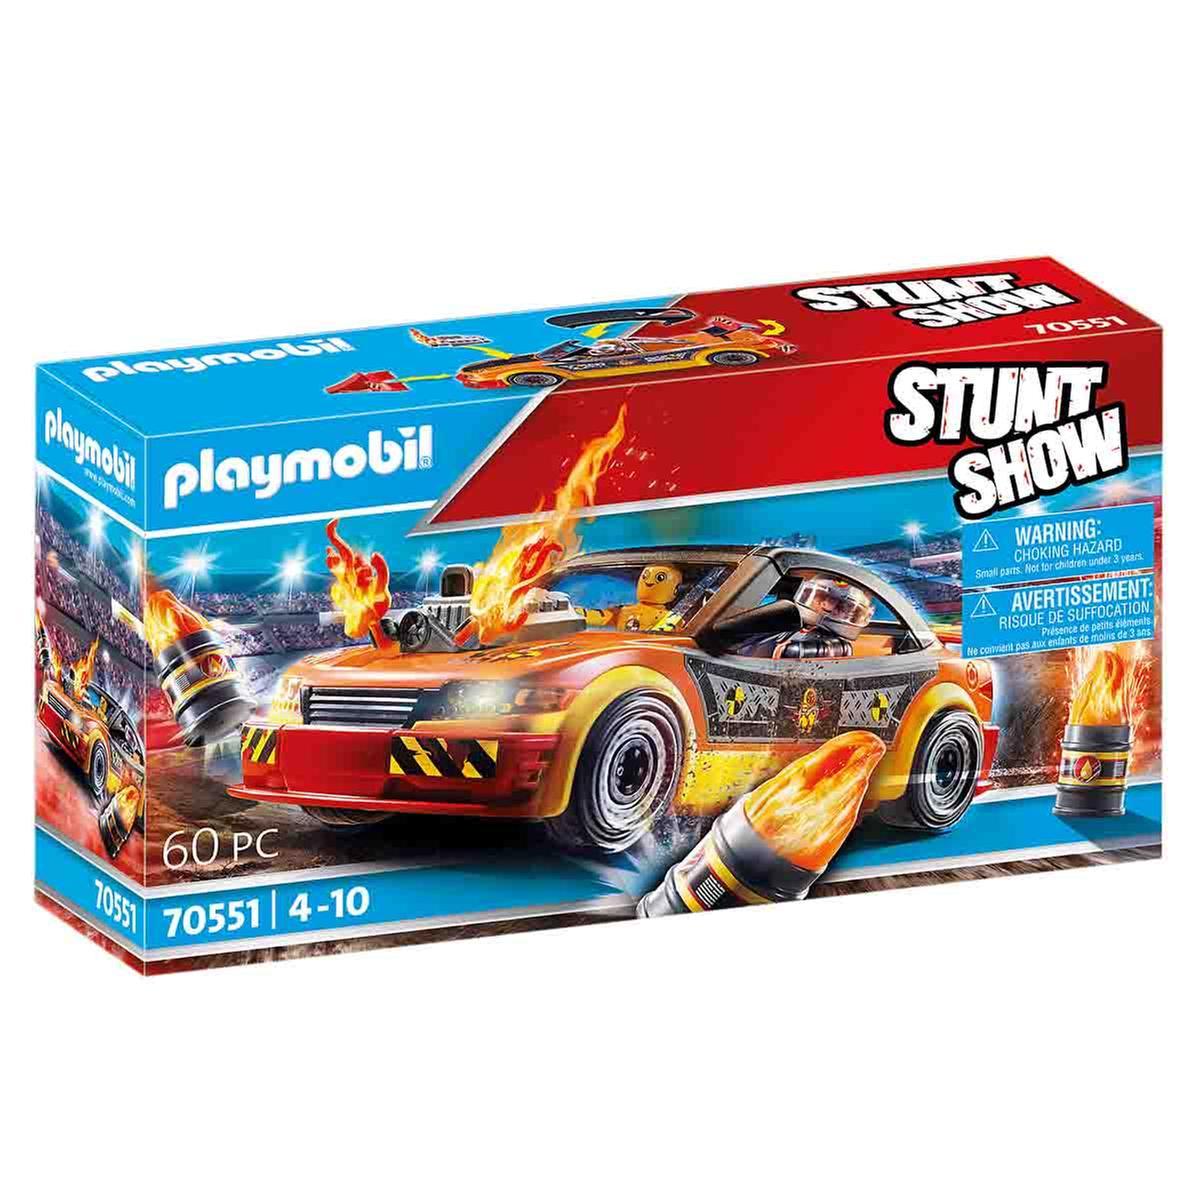 Itaca Ingenieria Buscar a tientas Playmobil - Stuntshow Crashcar - 70551 | Miscellaneous | Toys"R"Us España